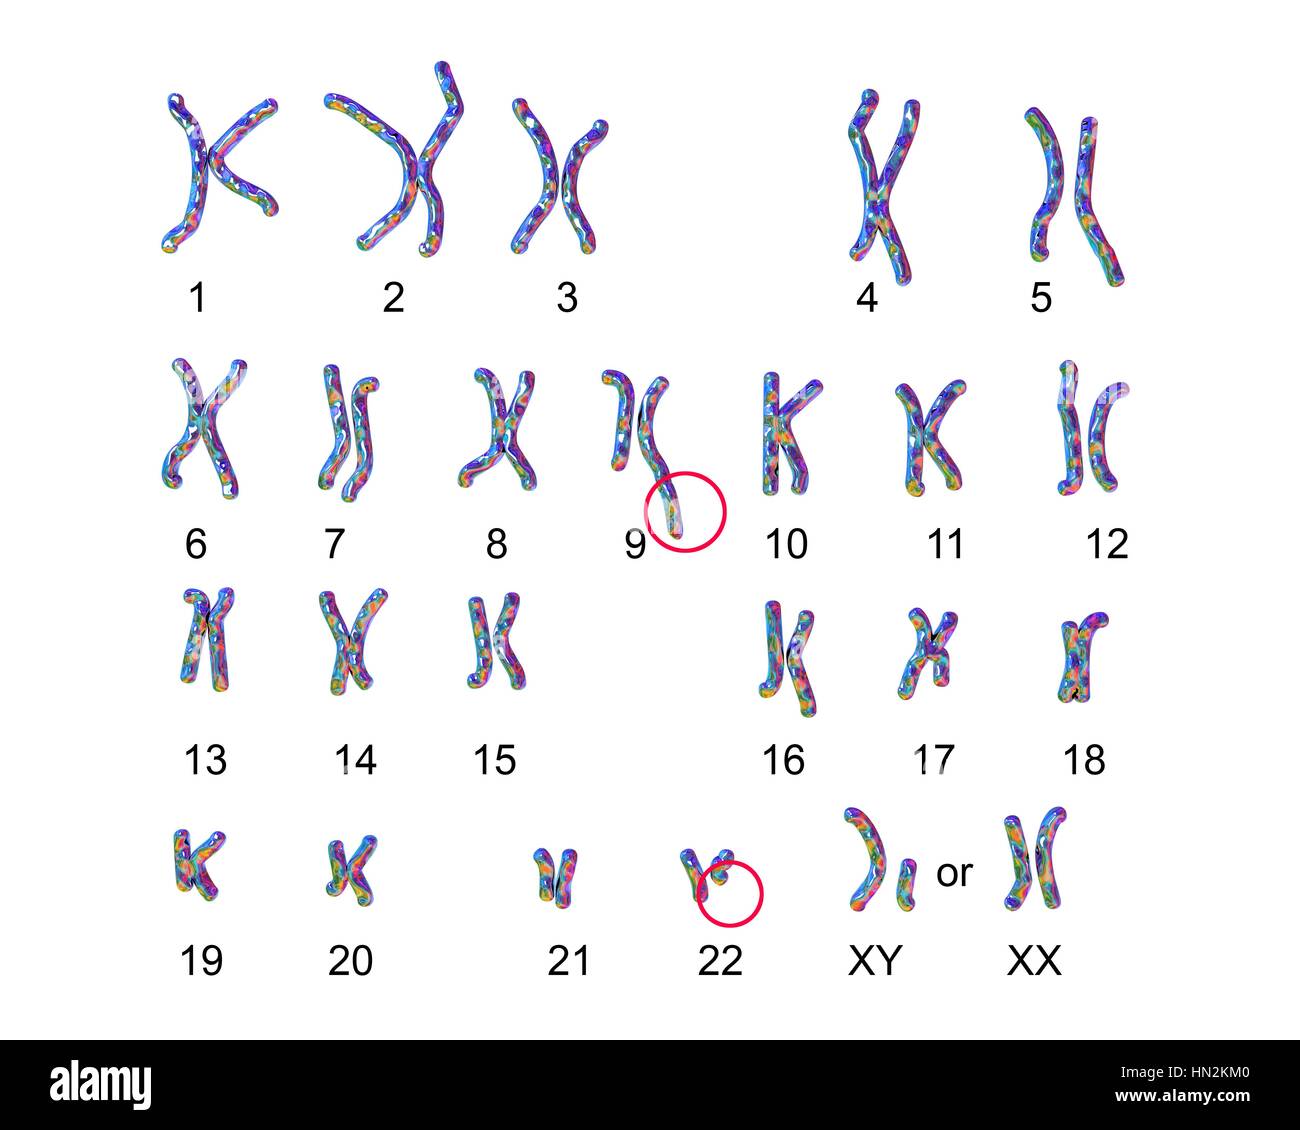 Philadelphia chromosome.Computer Darstellung der männlichen oder weiblichen Chromosomen (Chromosomensatz) einen defekten Chromosom jedes von Paaren 9 (Zentrum) 22 (unten Mitte). Die Defekte verursachen auf rechten Chromosomen von zwei Paaren, chronische myeloische Leukämie (CML). Die 46 Chromosomen des Menschen Karyotyp Stockfoto